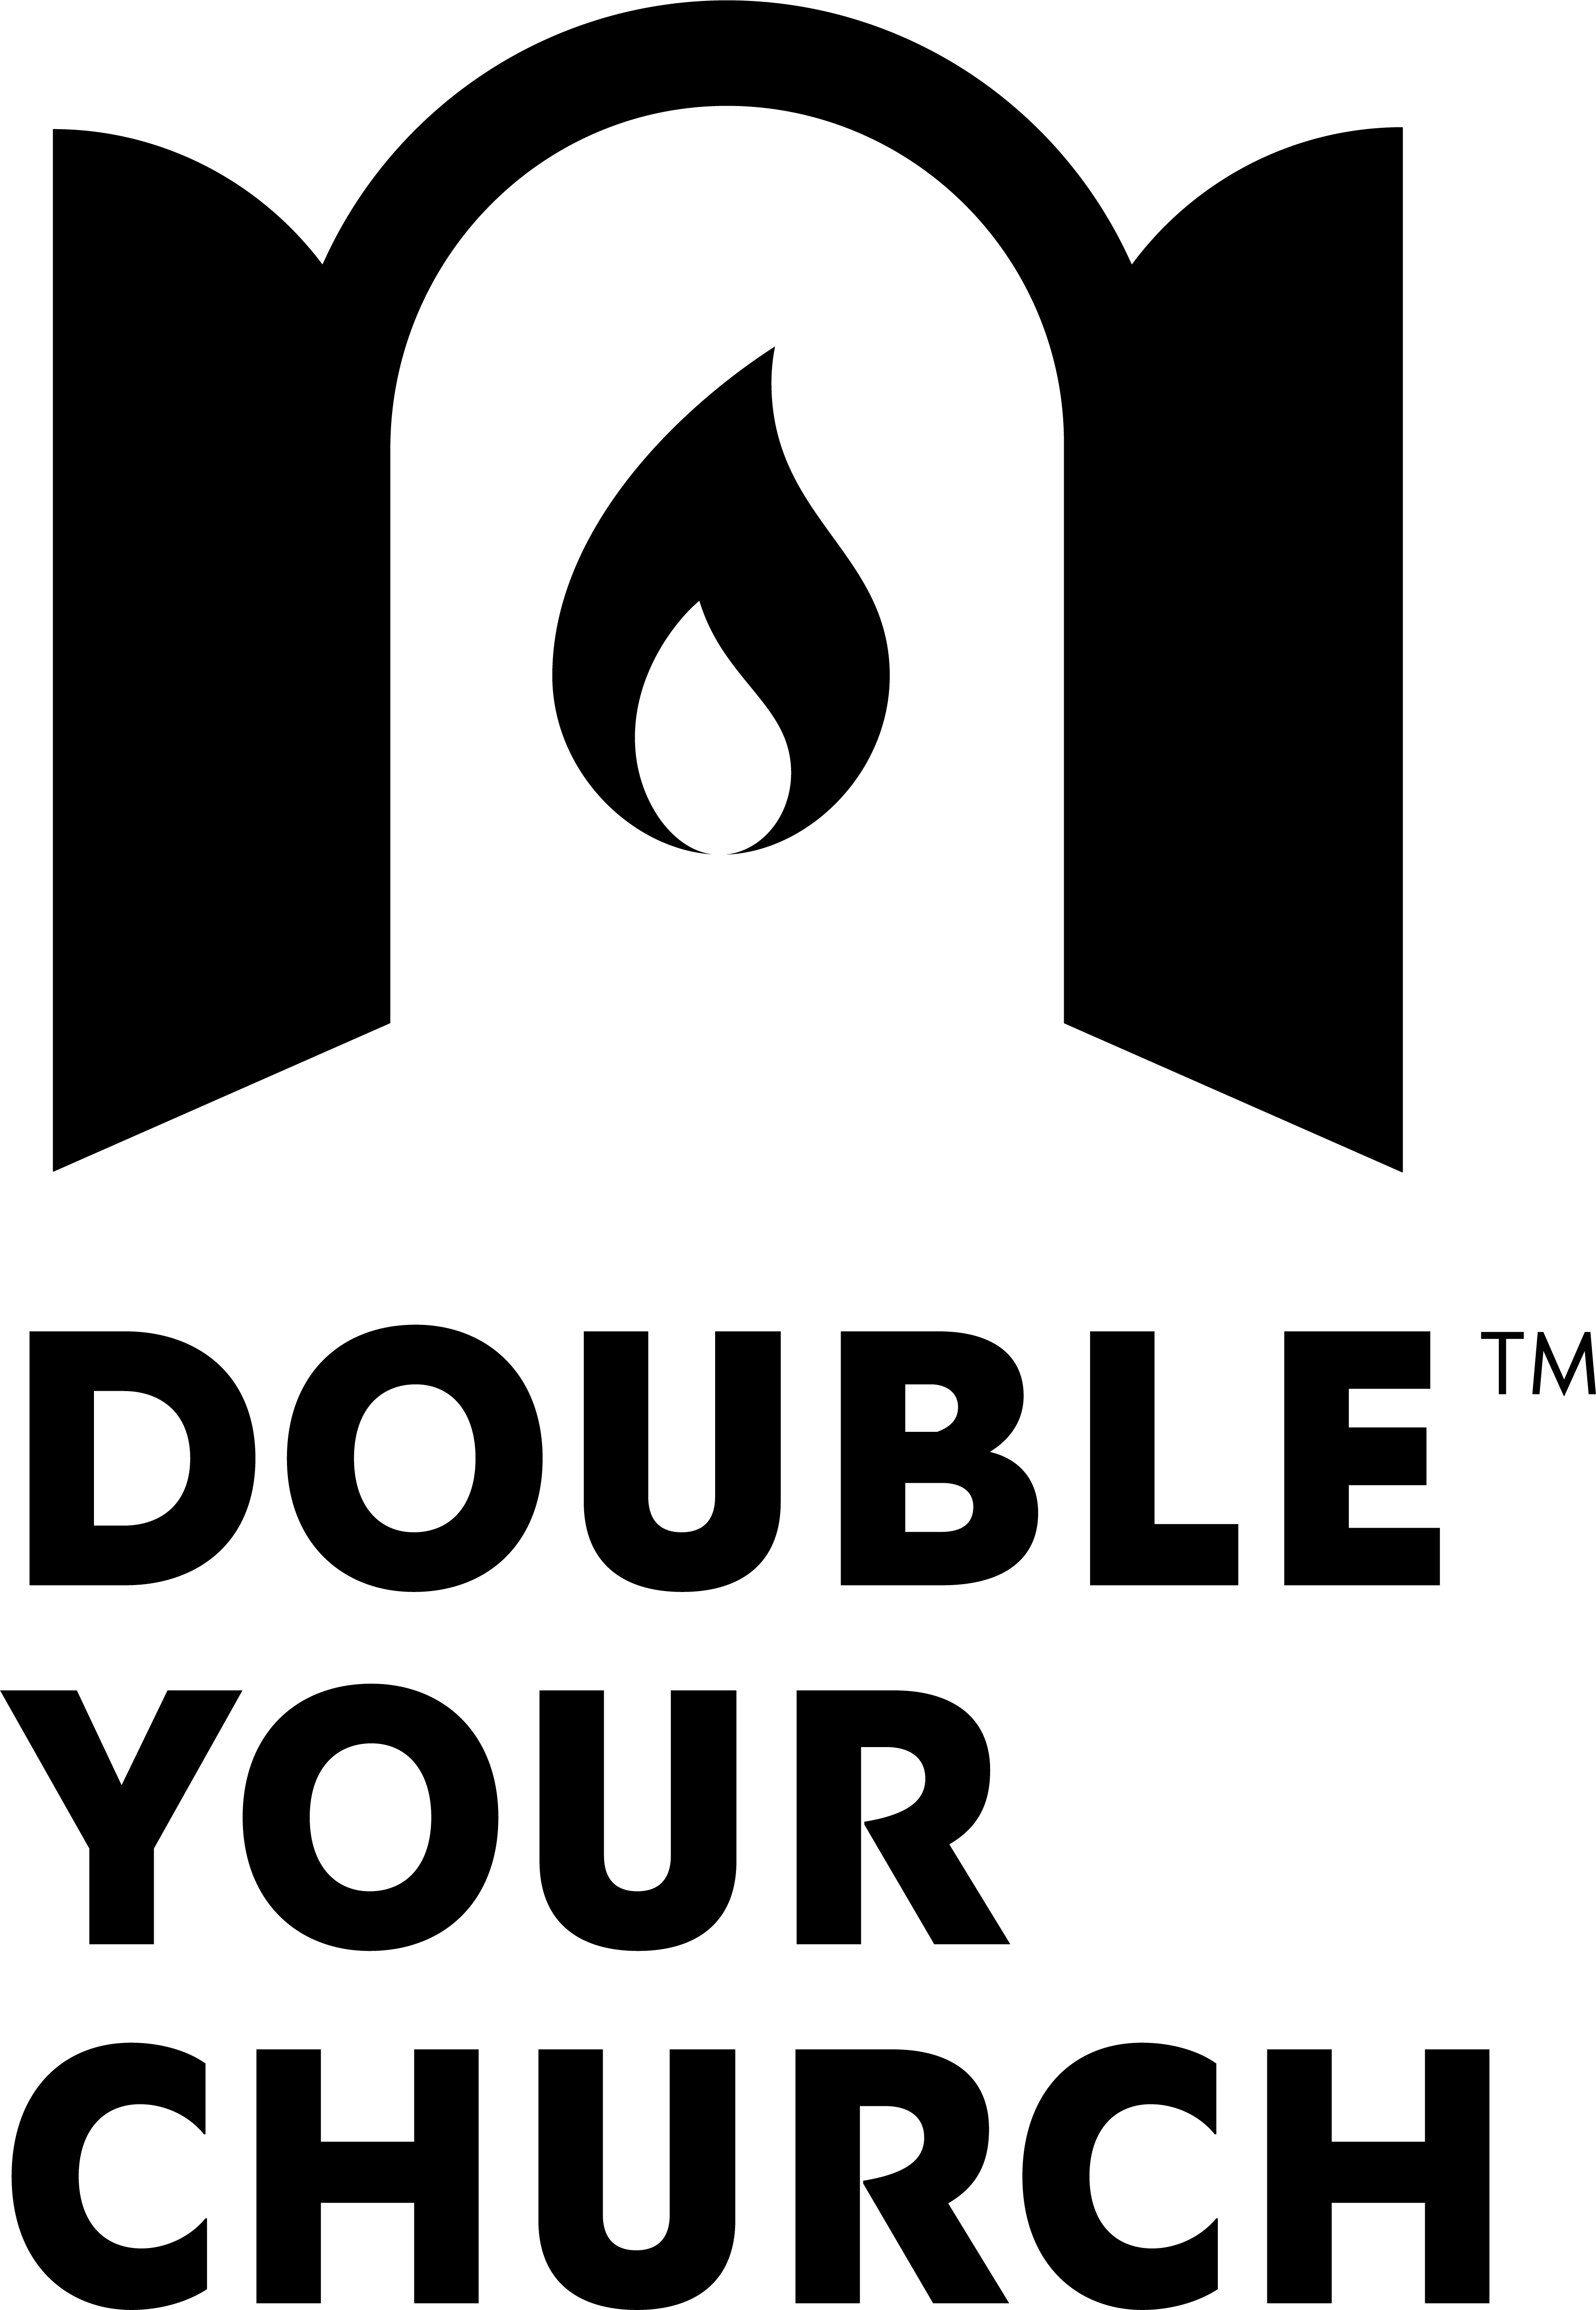 ChurchDoubler logo